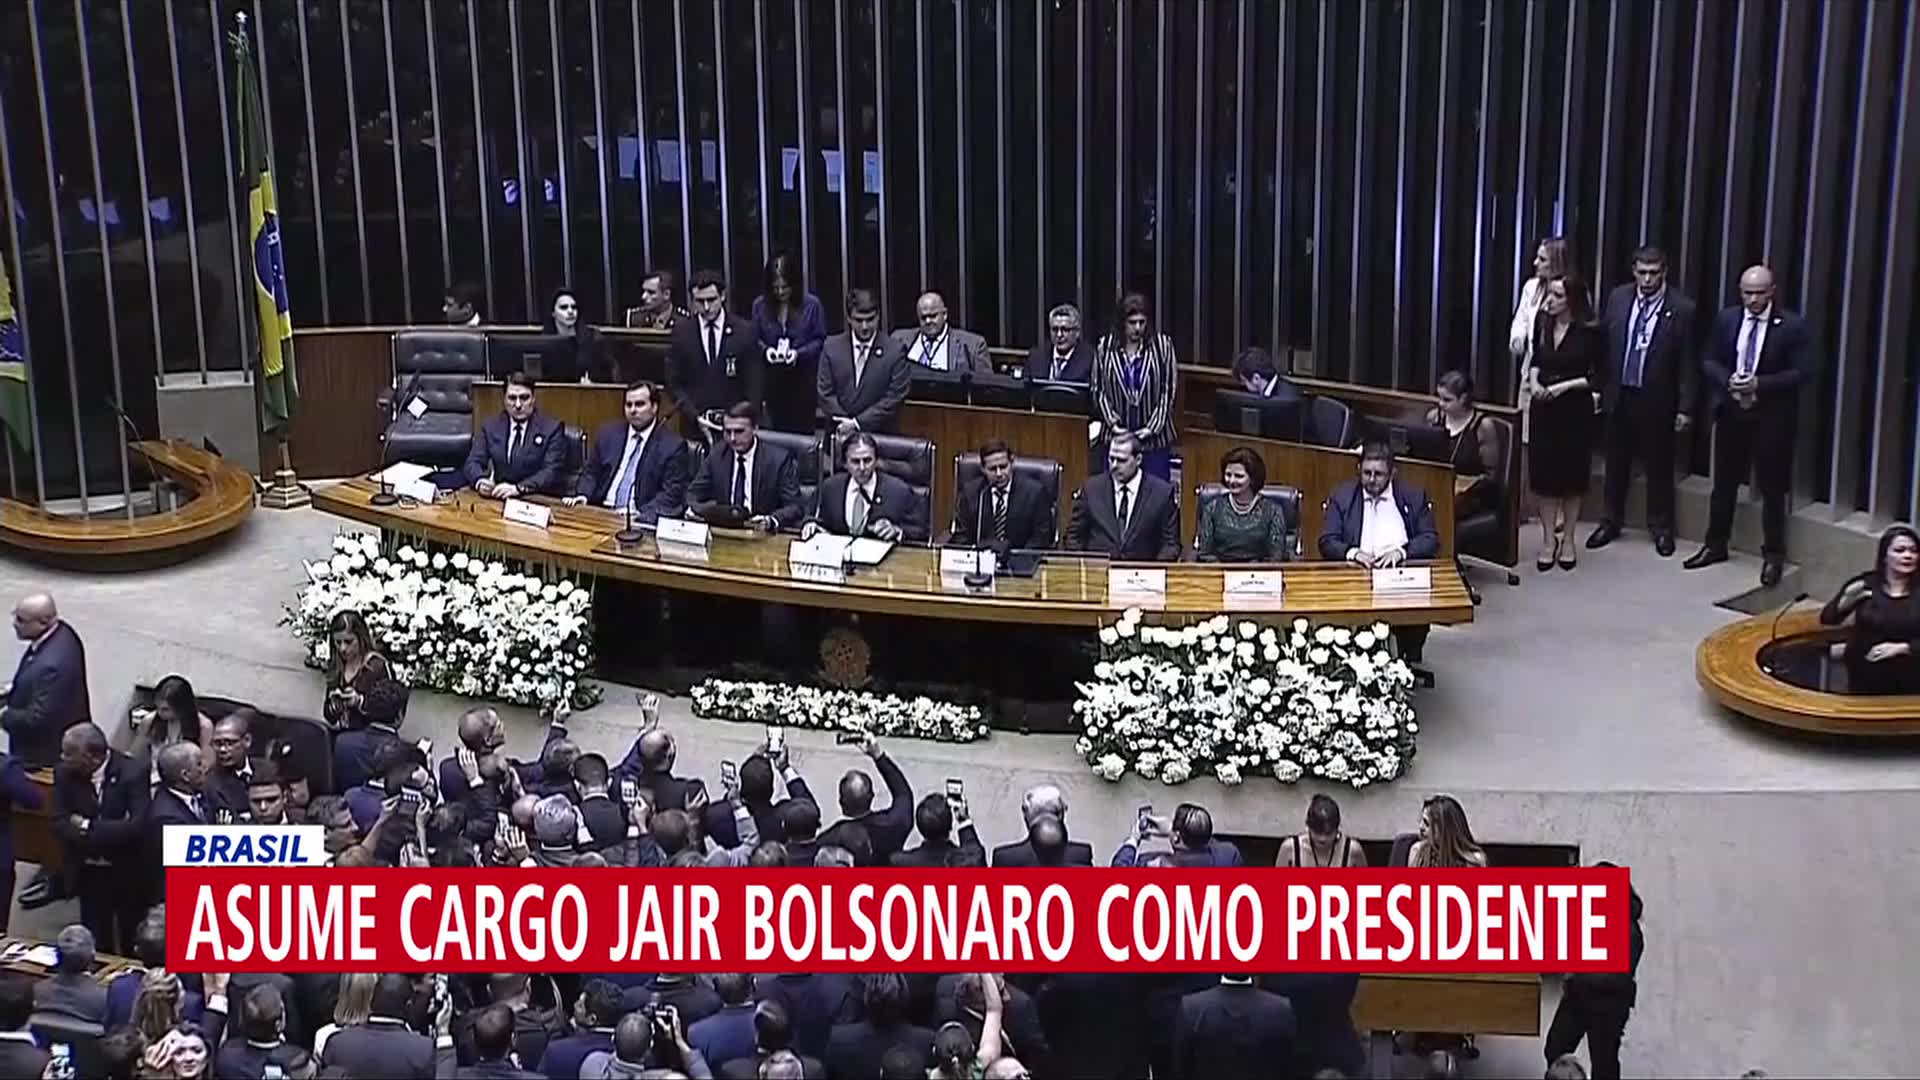 Jair Bolsonaro asume cargo como presidente número 38 de Brasil